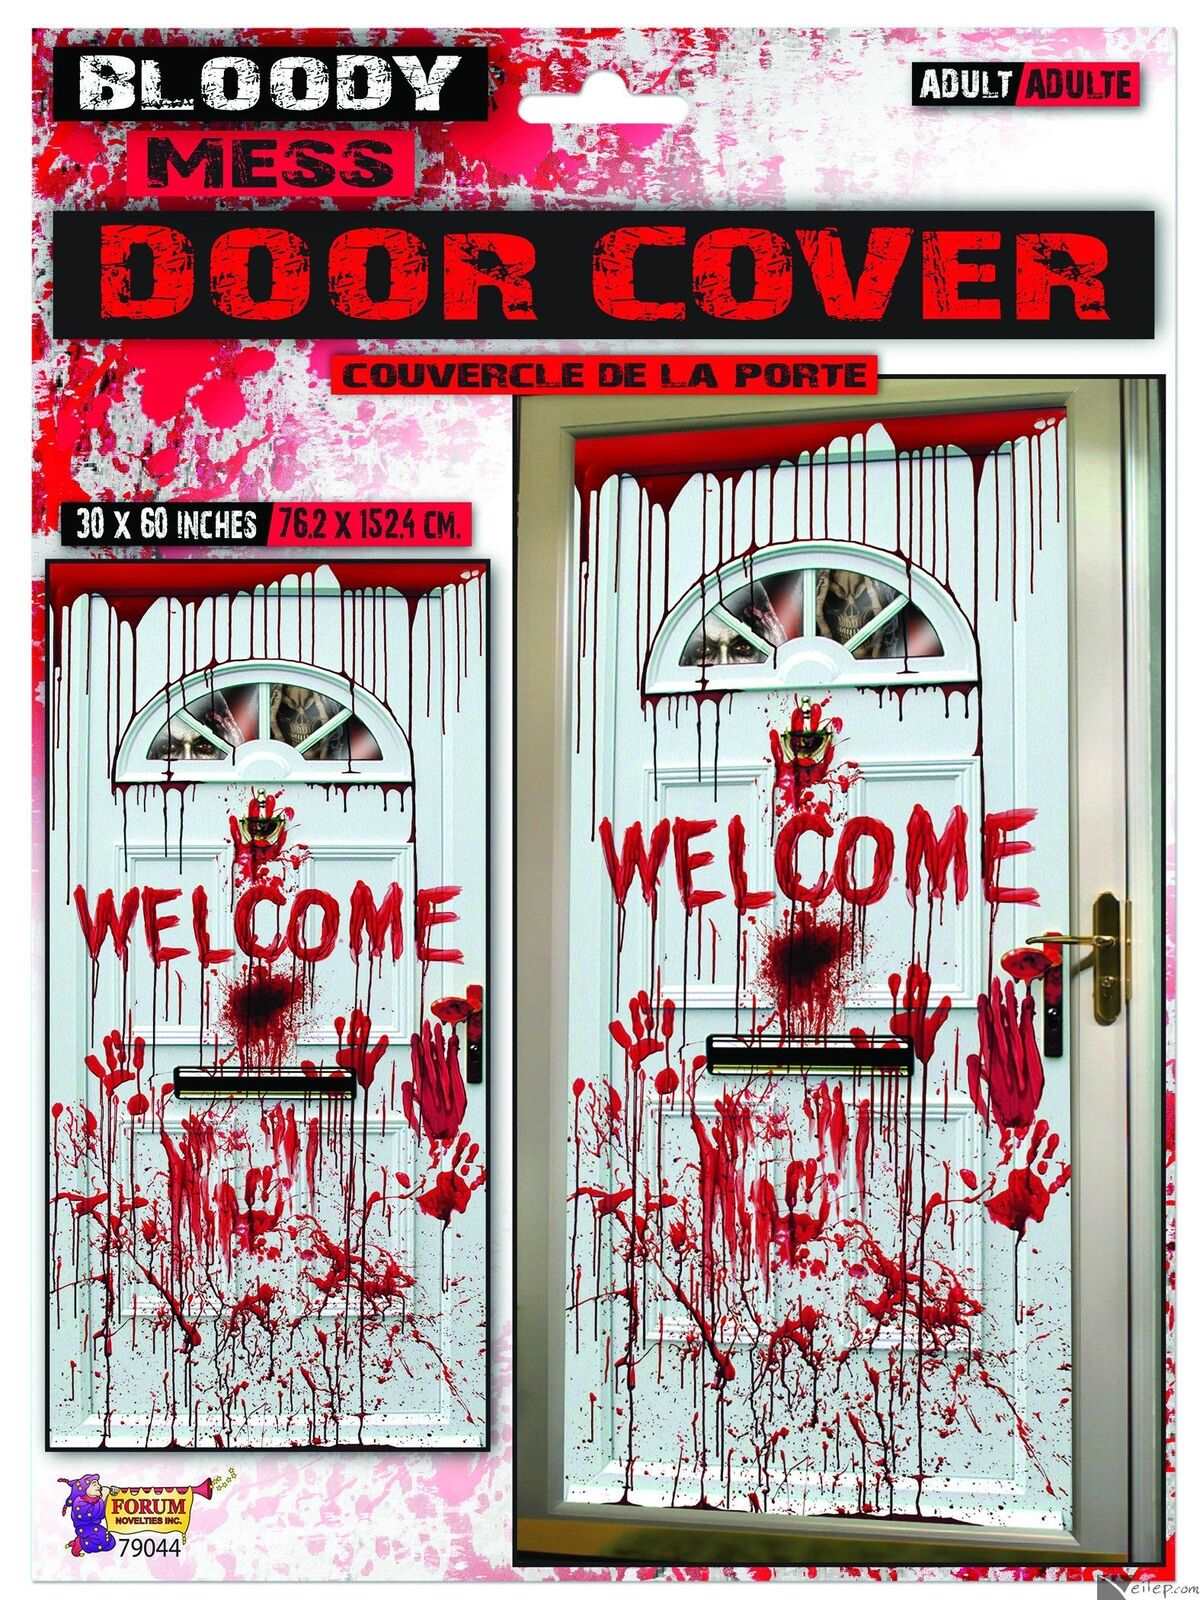 Bloody Mess-Welcome Door Cover